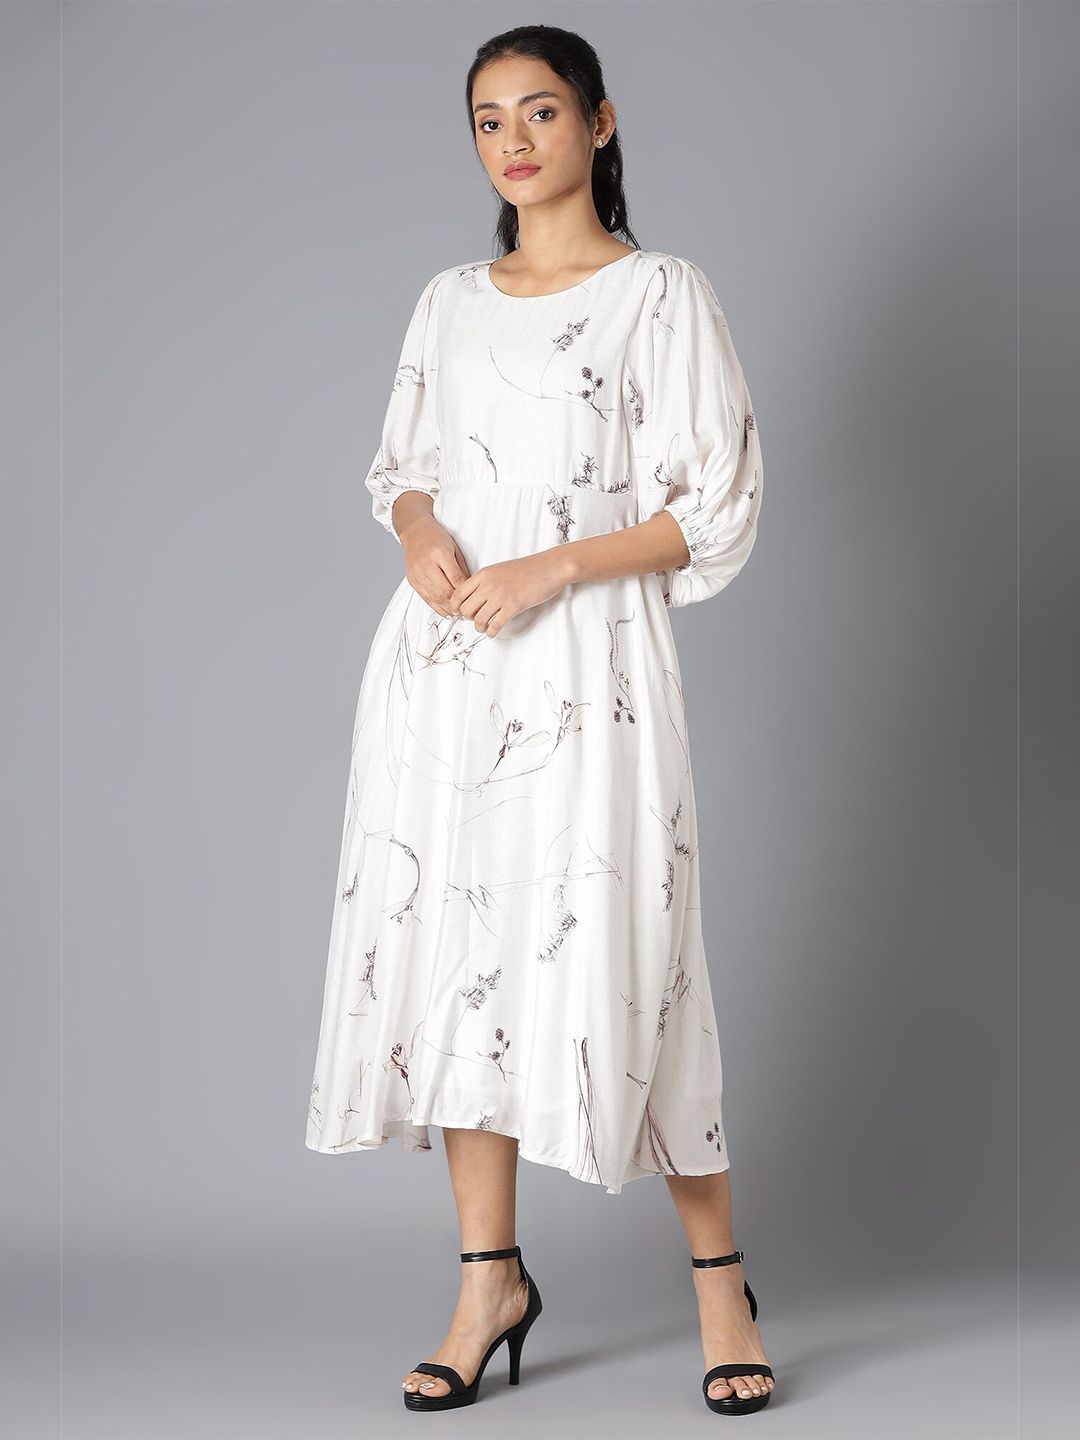 W Women White A-Line Midi Dress Price in India